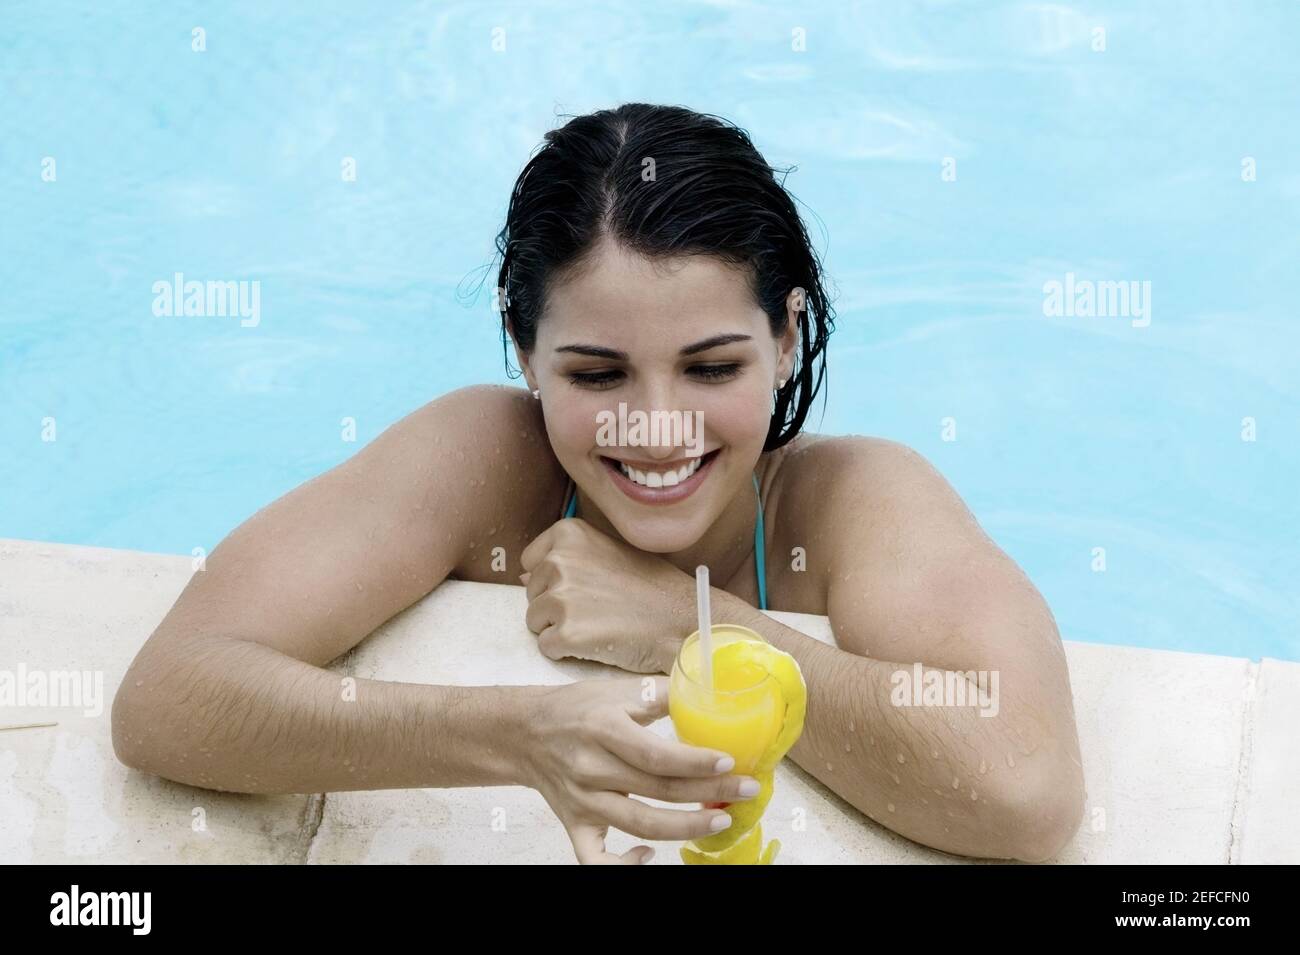 Vista en ángulo alto de una joven que toma una bebida en una piscina Foto de stock